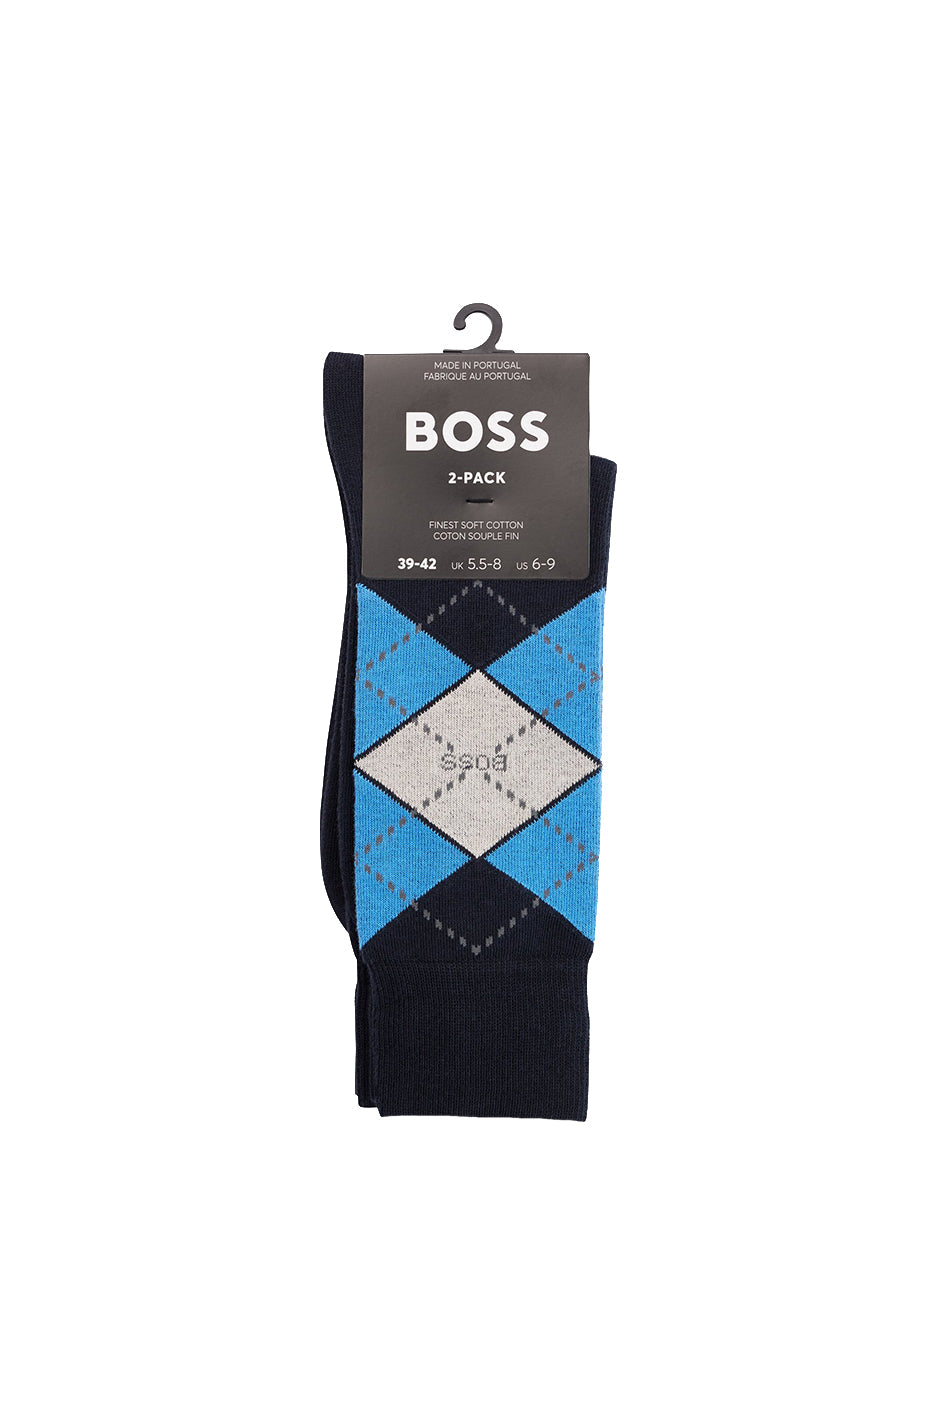 BOSS 2 Pack Men's Argyle Sock